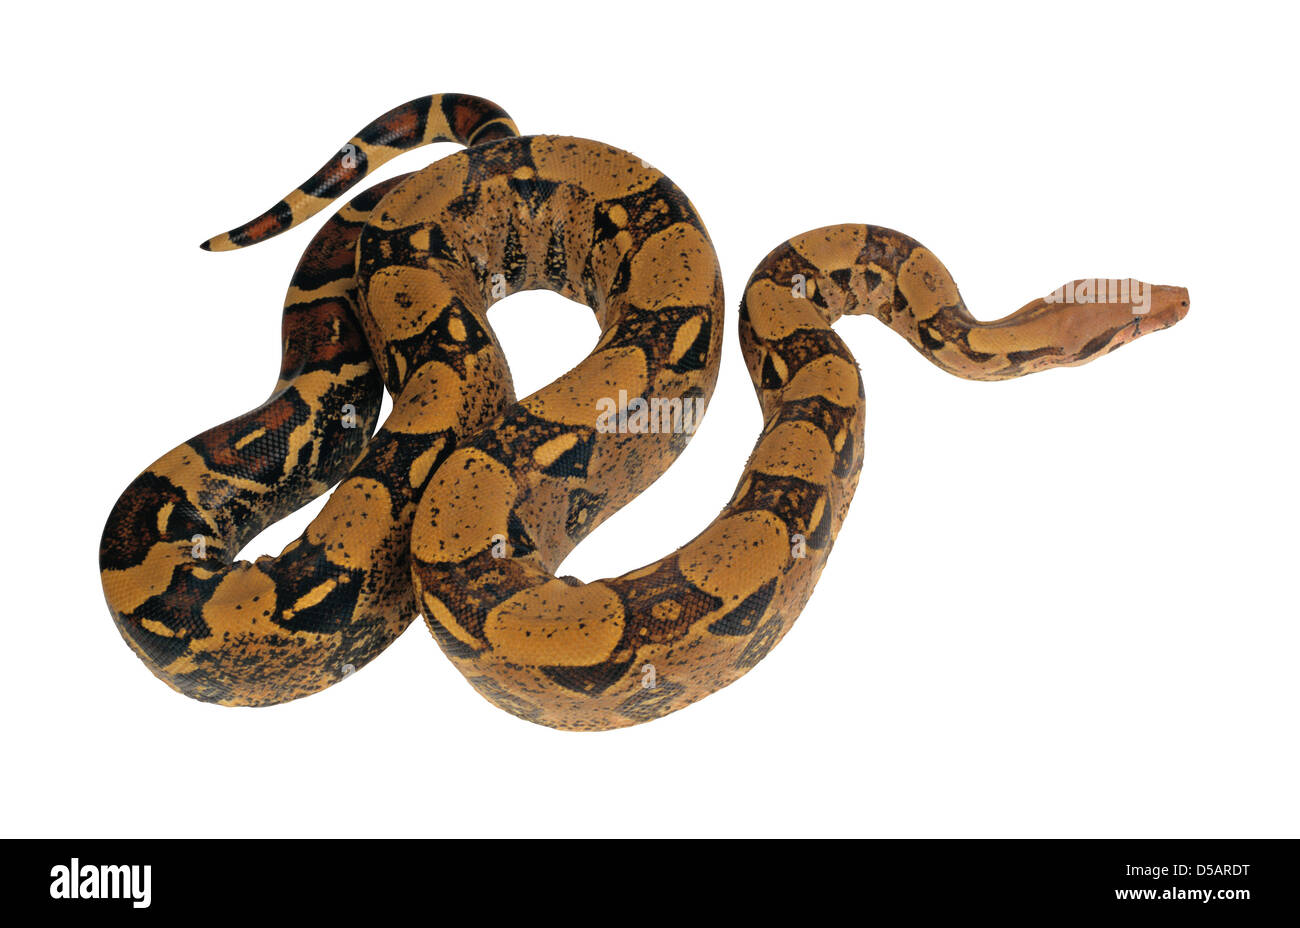 La serpiente sobre fondo blanco Foto de stock